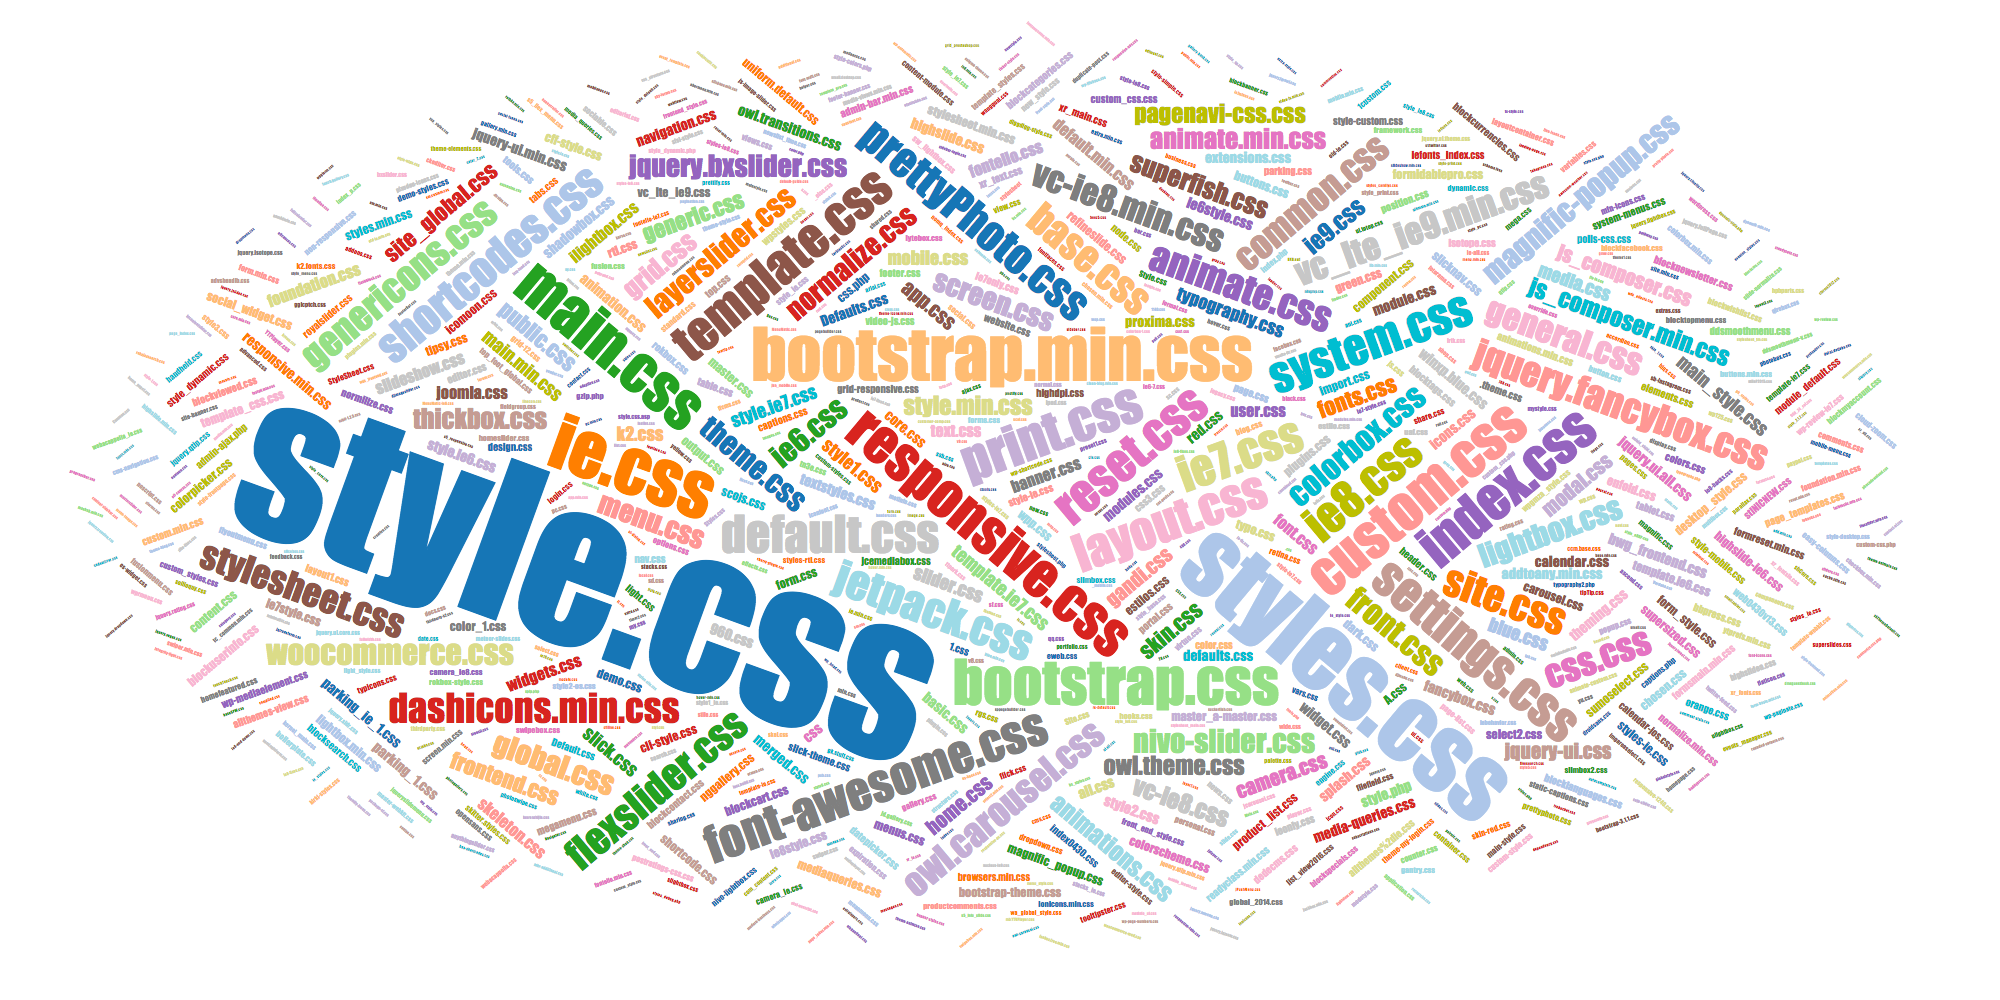 Popular names of CSS files responsive.css, reset.css, etc.